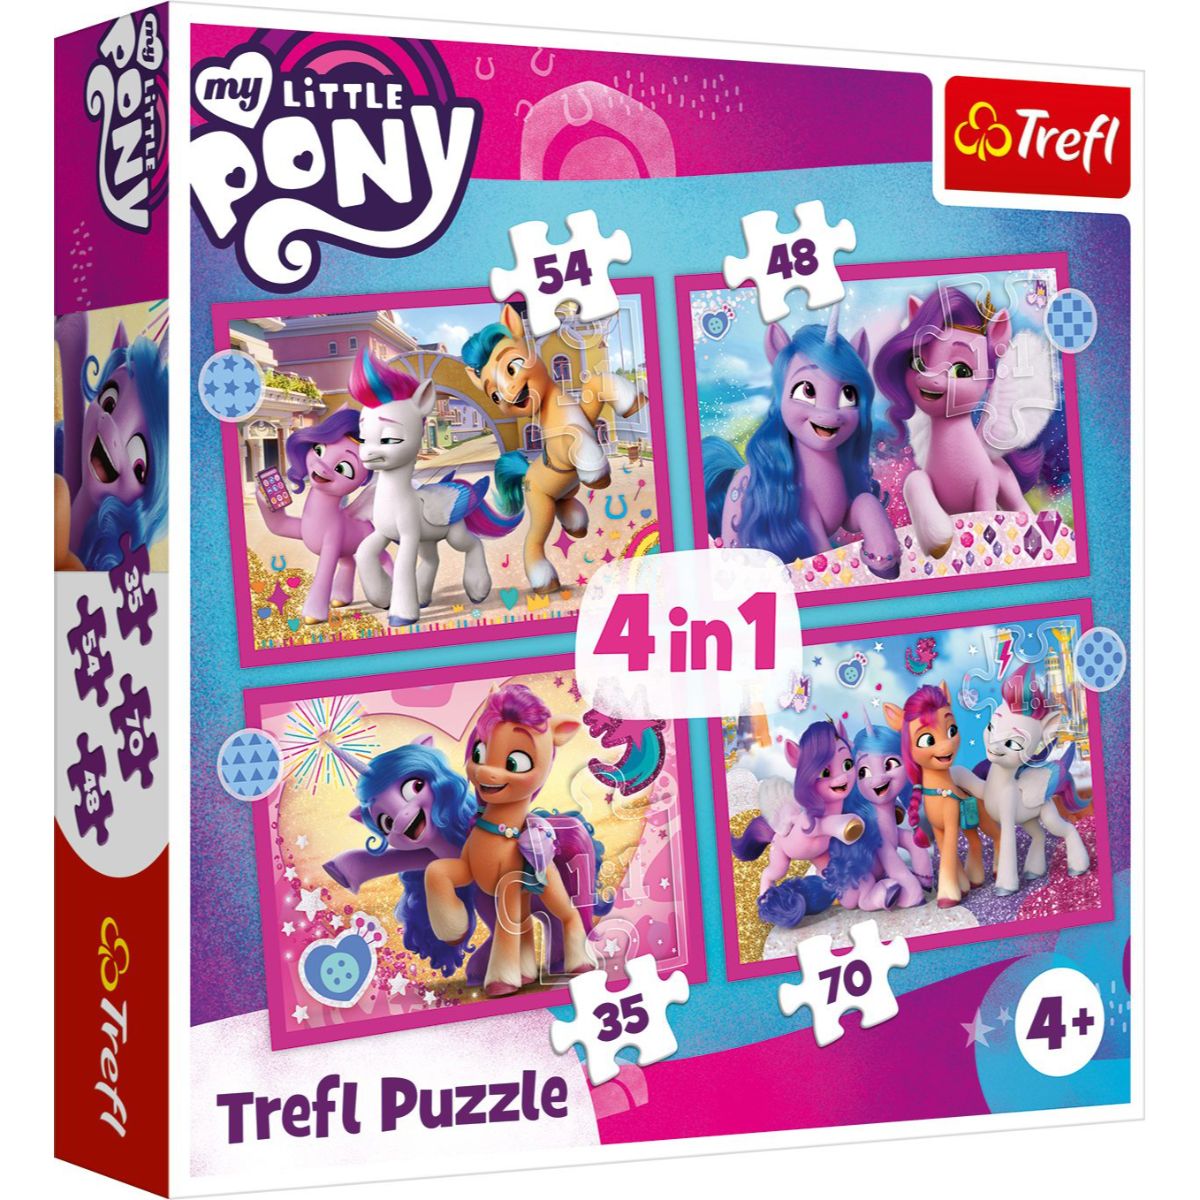 Puzzle Trefl 4 in 1, Poneii colorati, My Little Pony (35, 48, 54, 70 piese) noriel.ro imagine noua